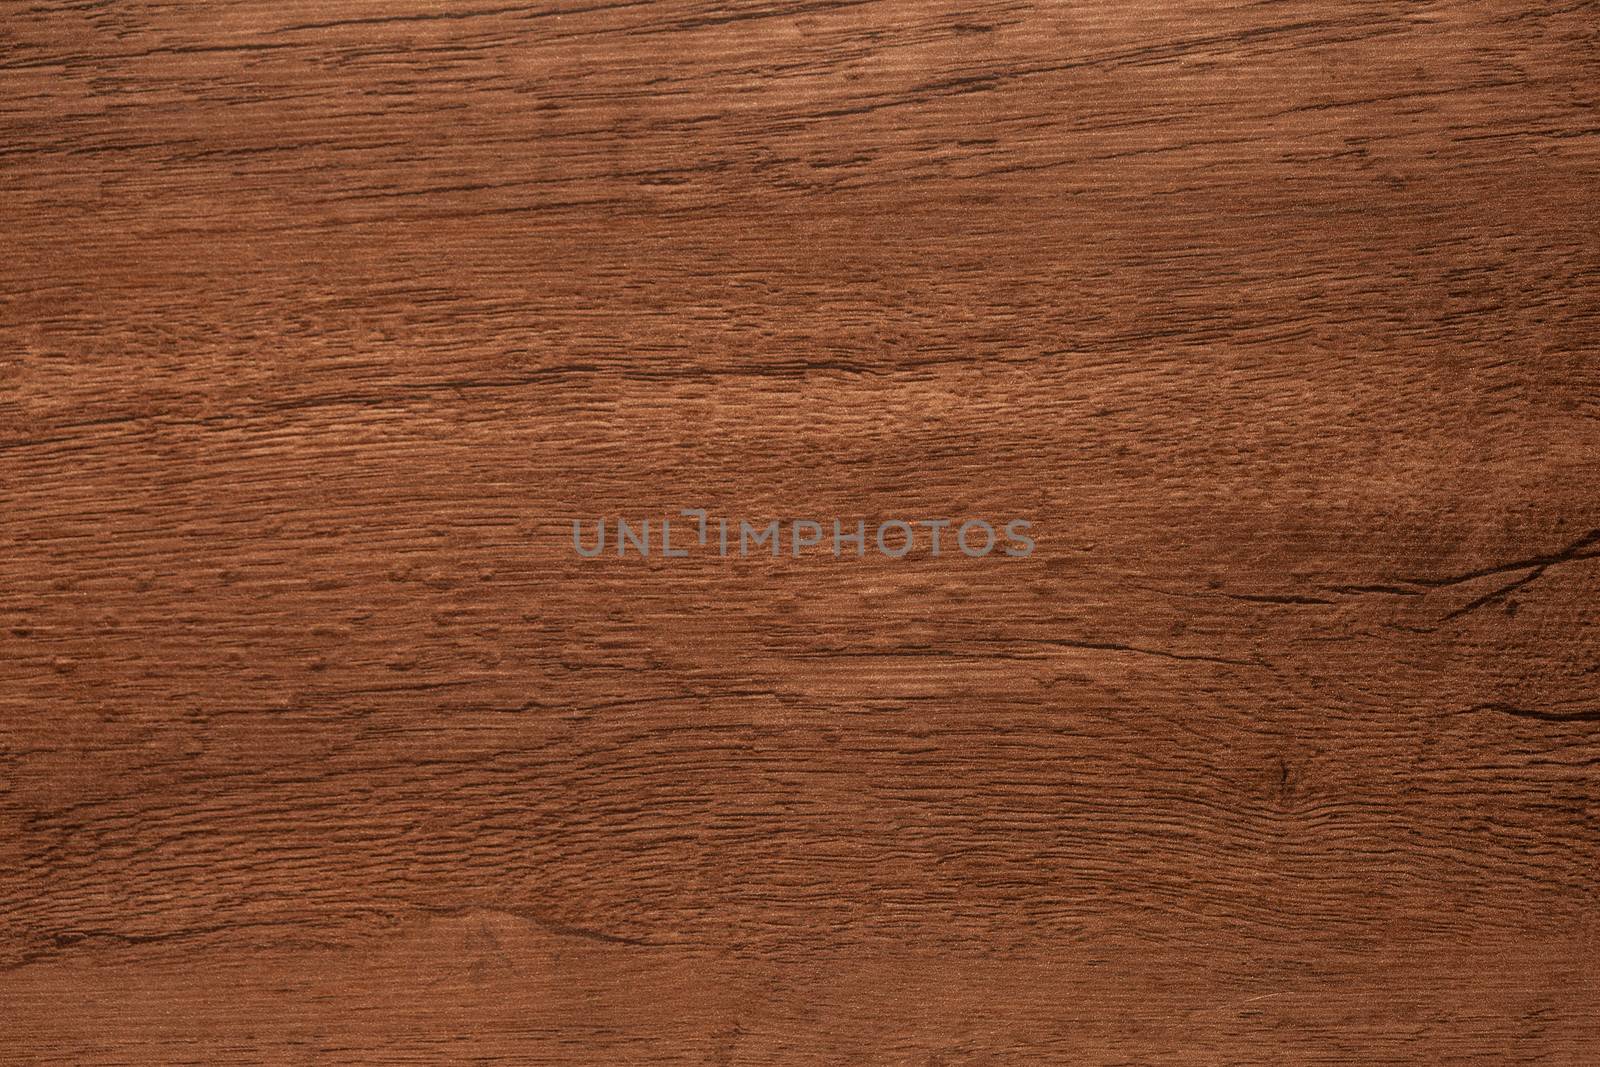 Wooden Texture by Daniel_Wiedemann